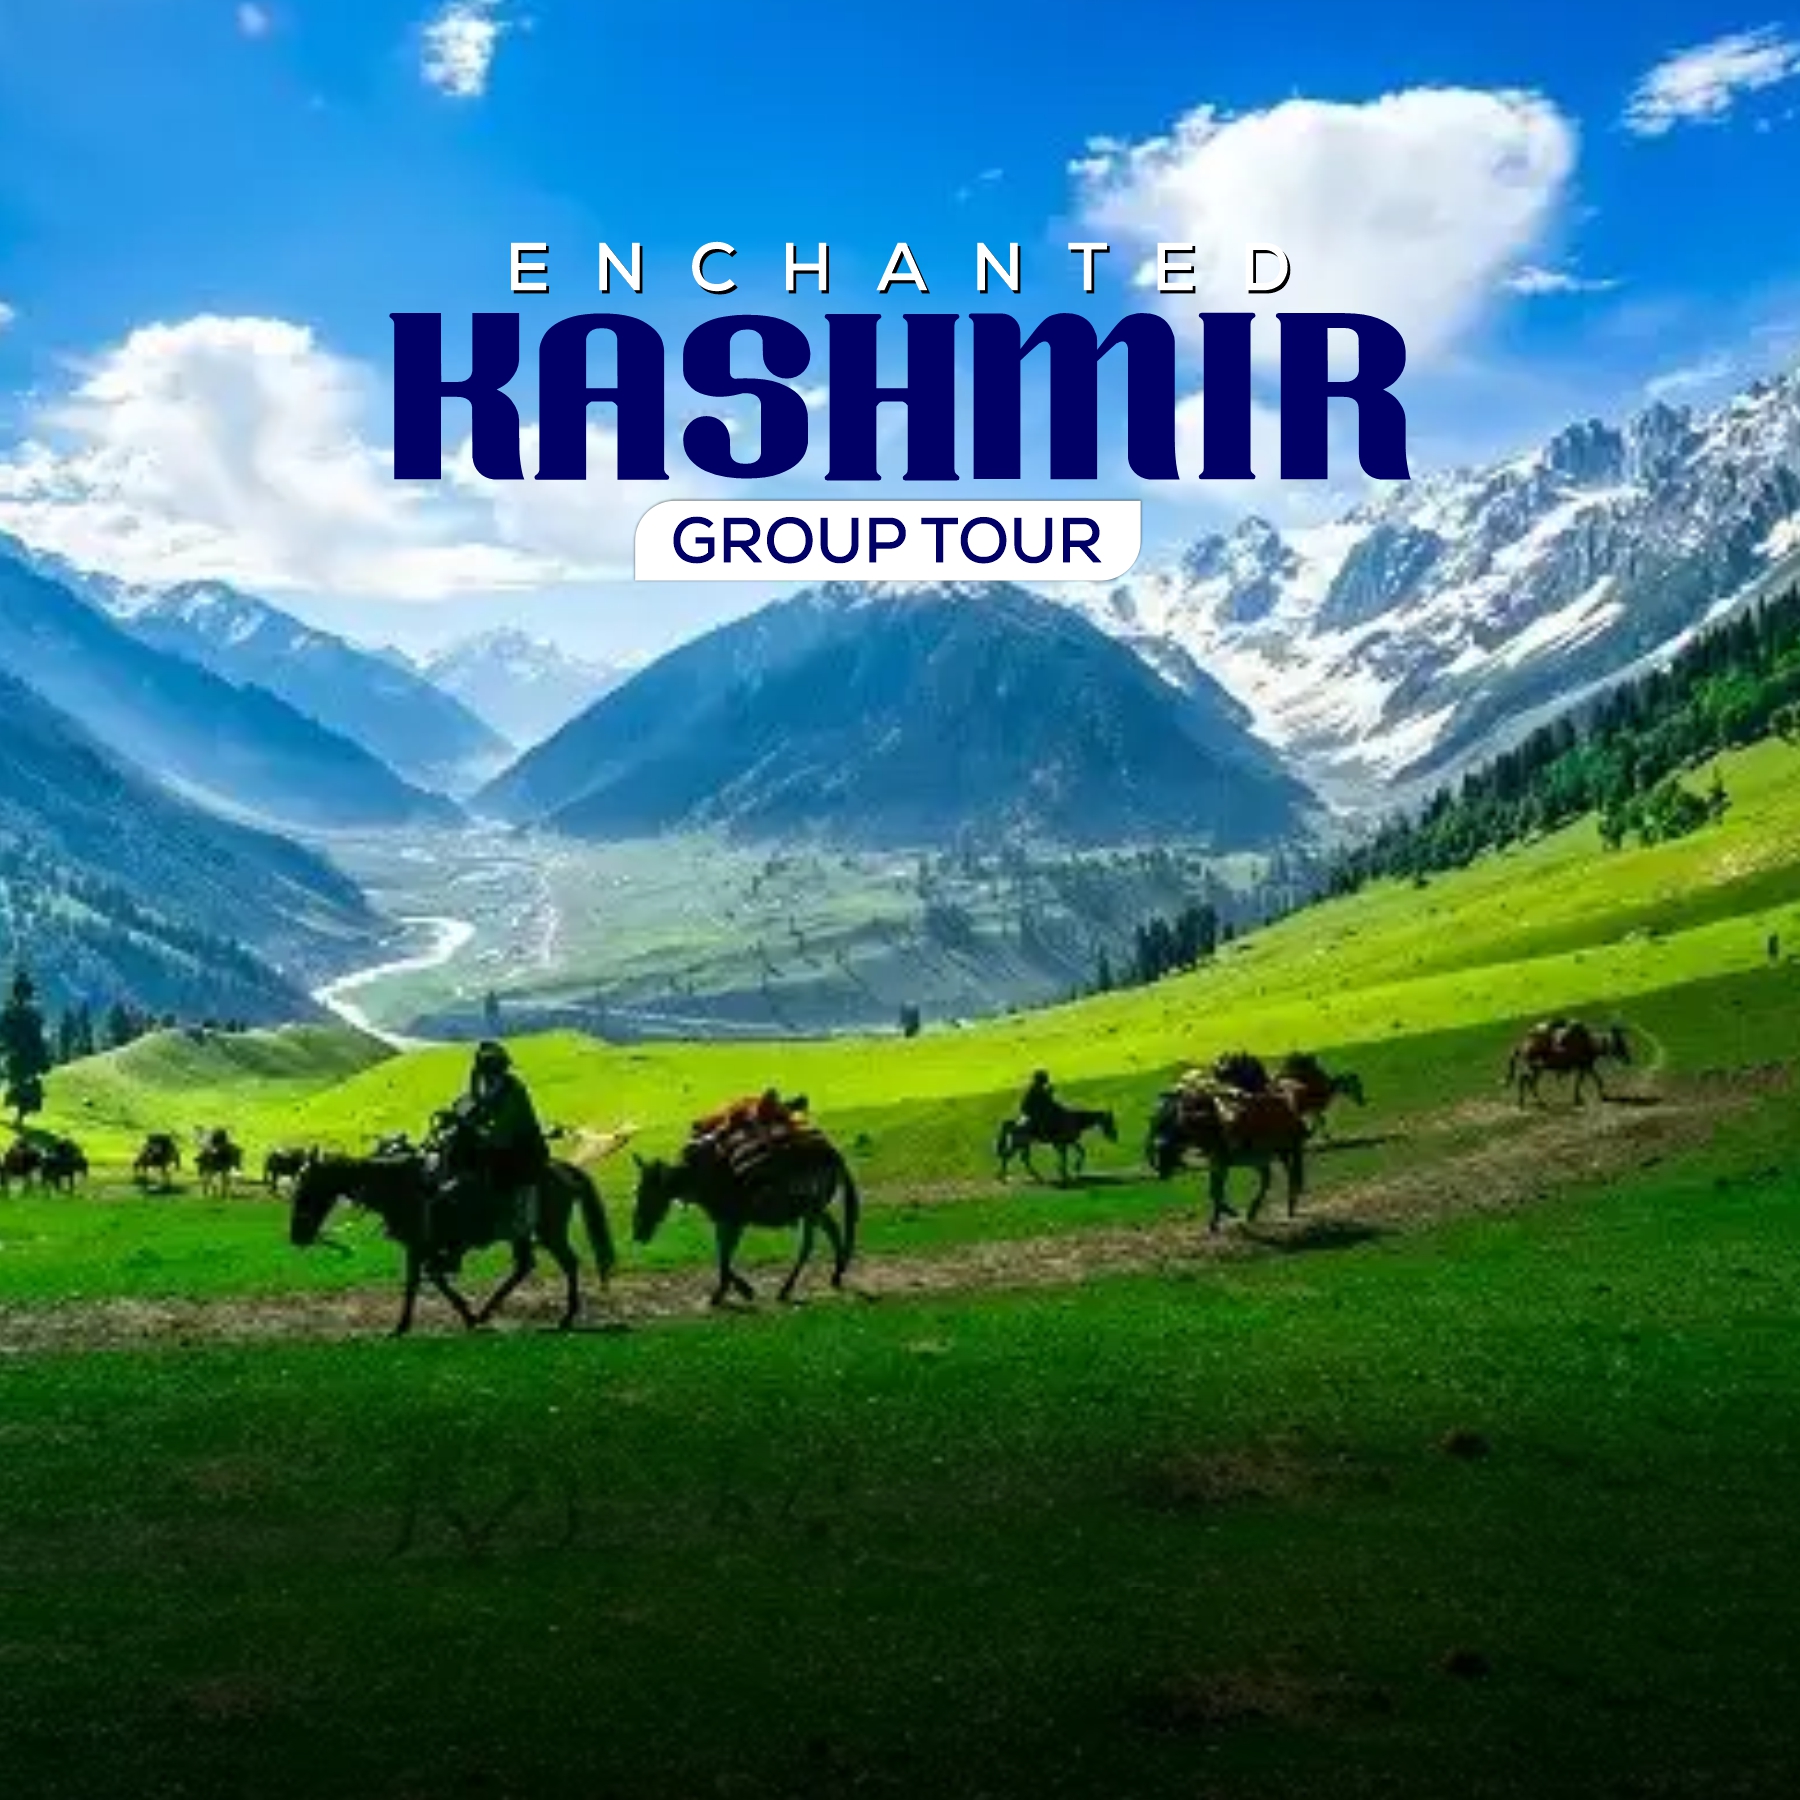 Enchanted Kashmir Tour, Srinagar, Jammu and Kashmir, India